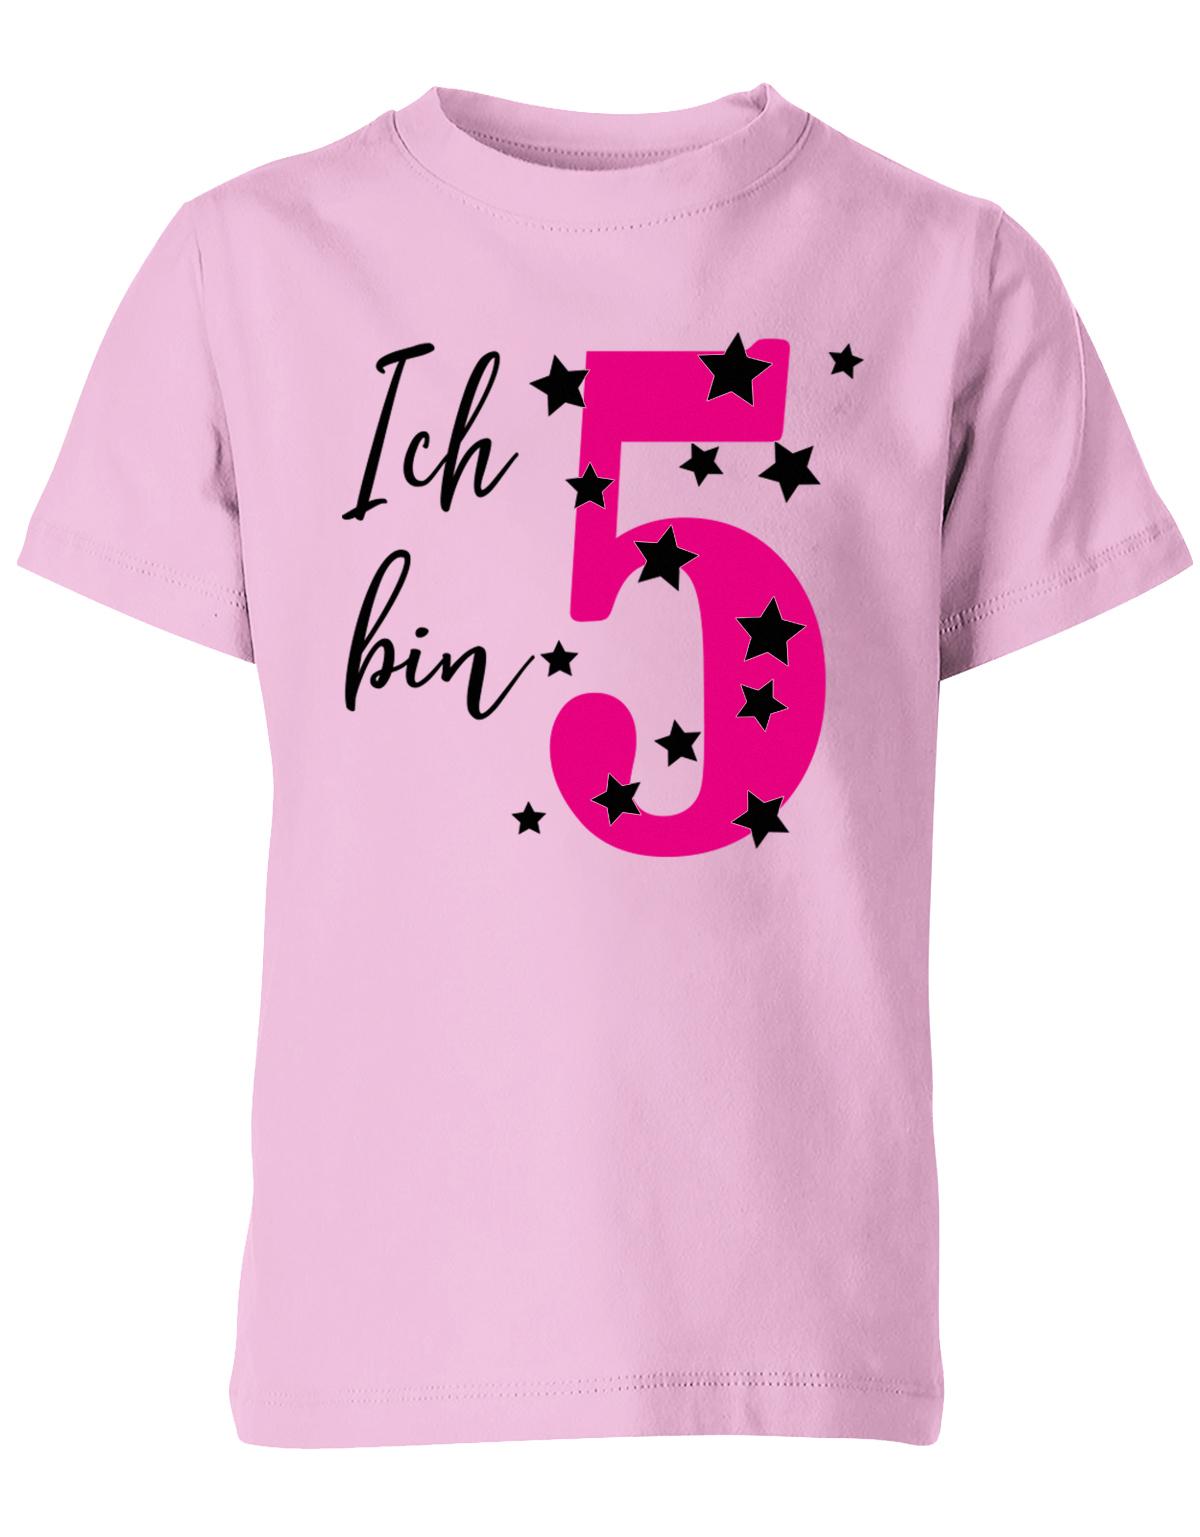 T-Shirt 5 Geburtstag ich bin 5 in Pink mit Sterne verziert für Mädchen Rosa